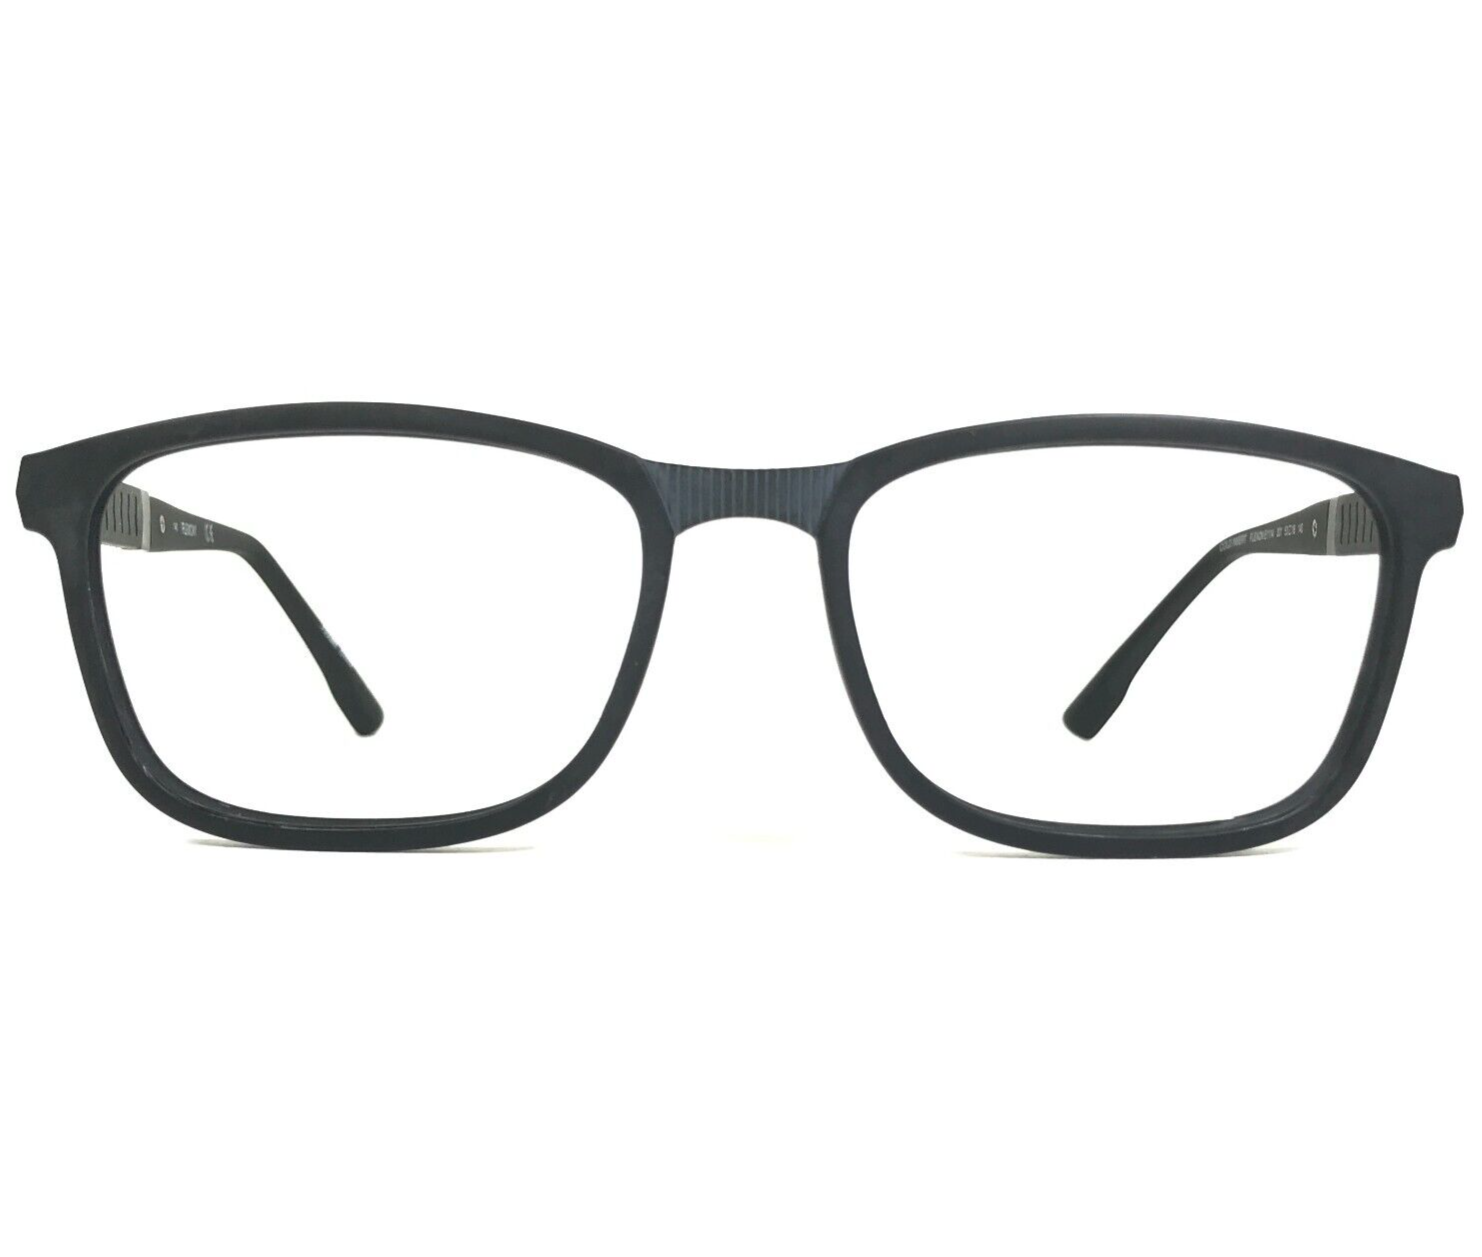 Primary image for Flexon Eyeglasses Frames E1114 001 Matte Black Gray Square Full Rim 53-18-140